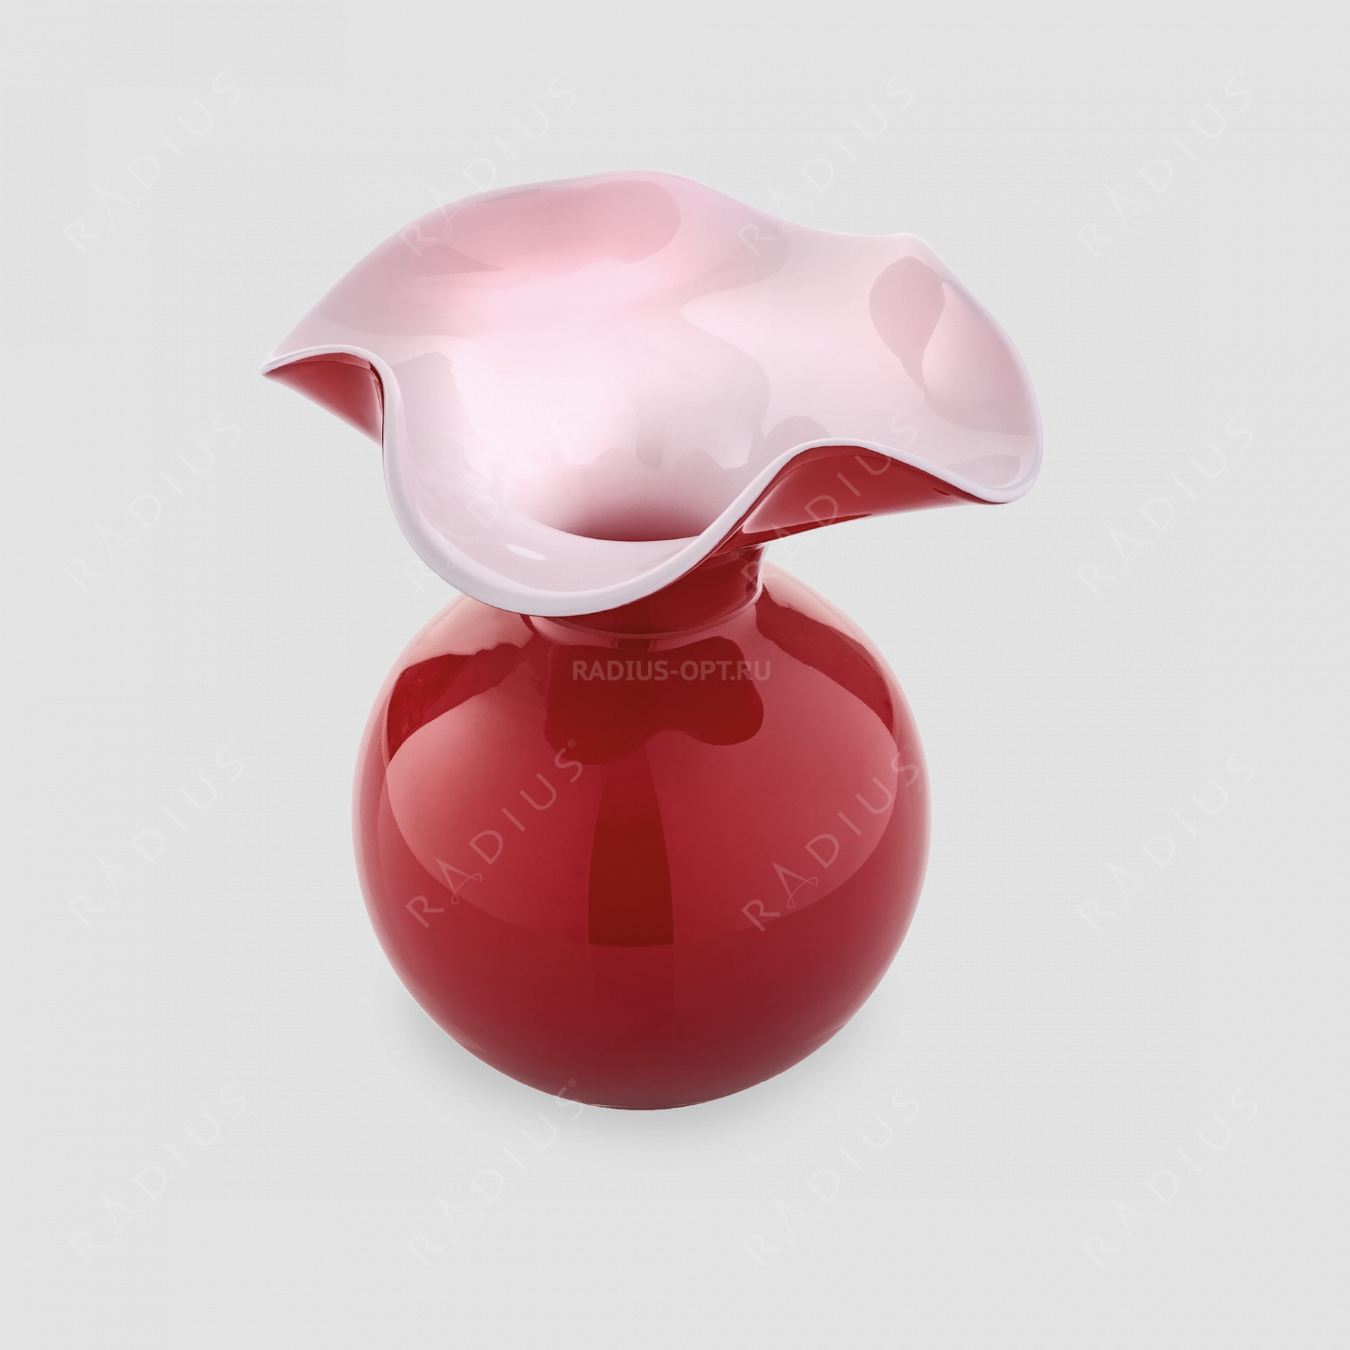 Маленькая стеклянная ваза для цветов, диаметр: 13 см, высота: 14 см, материал: стекло, цвет: красный, серия Primula, IVV (Italy), Италия